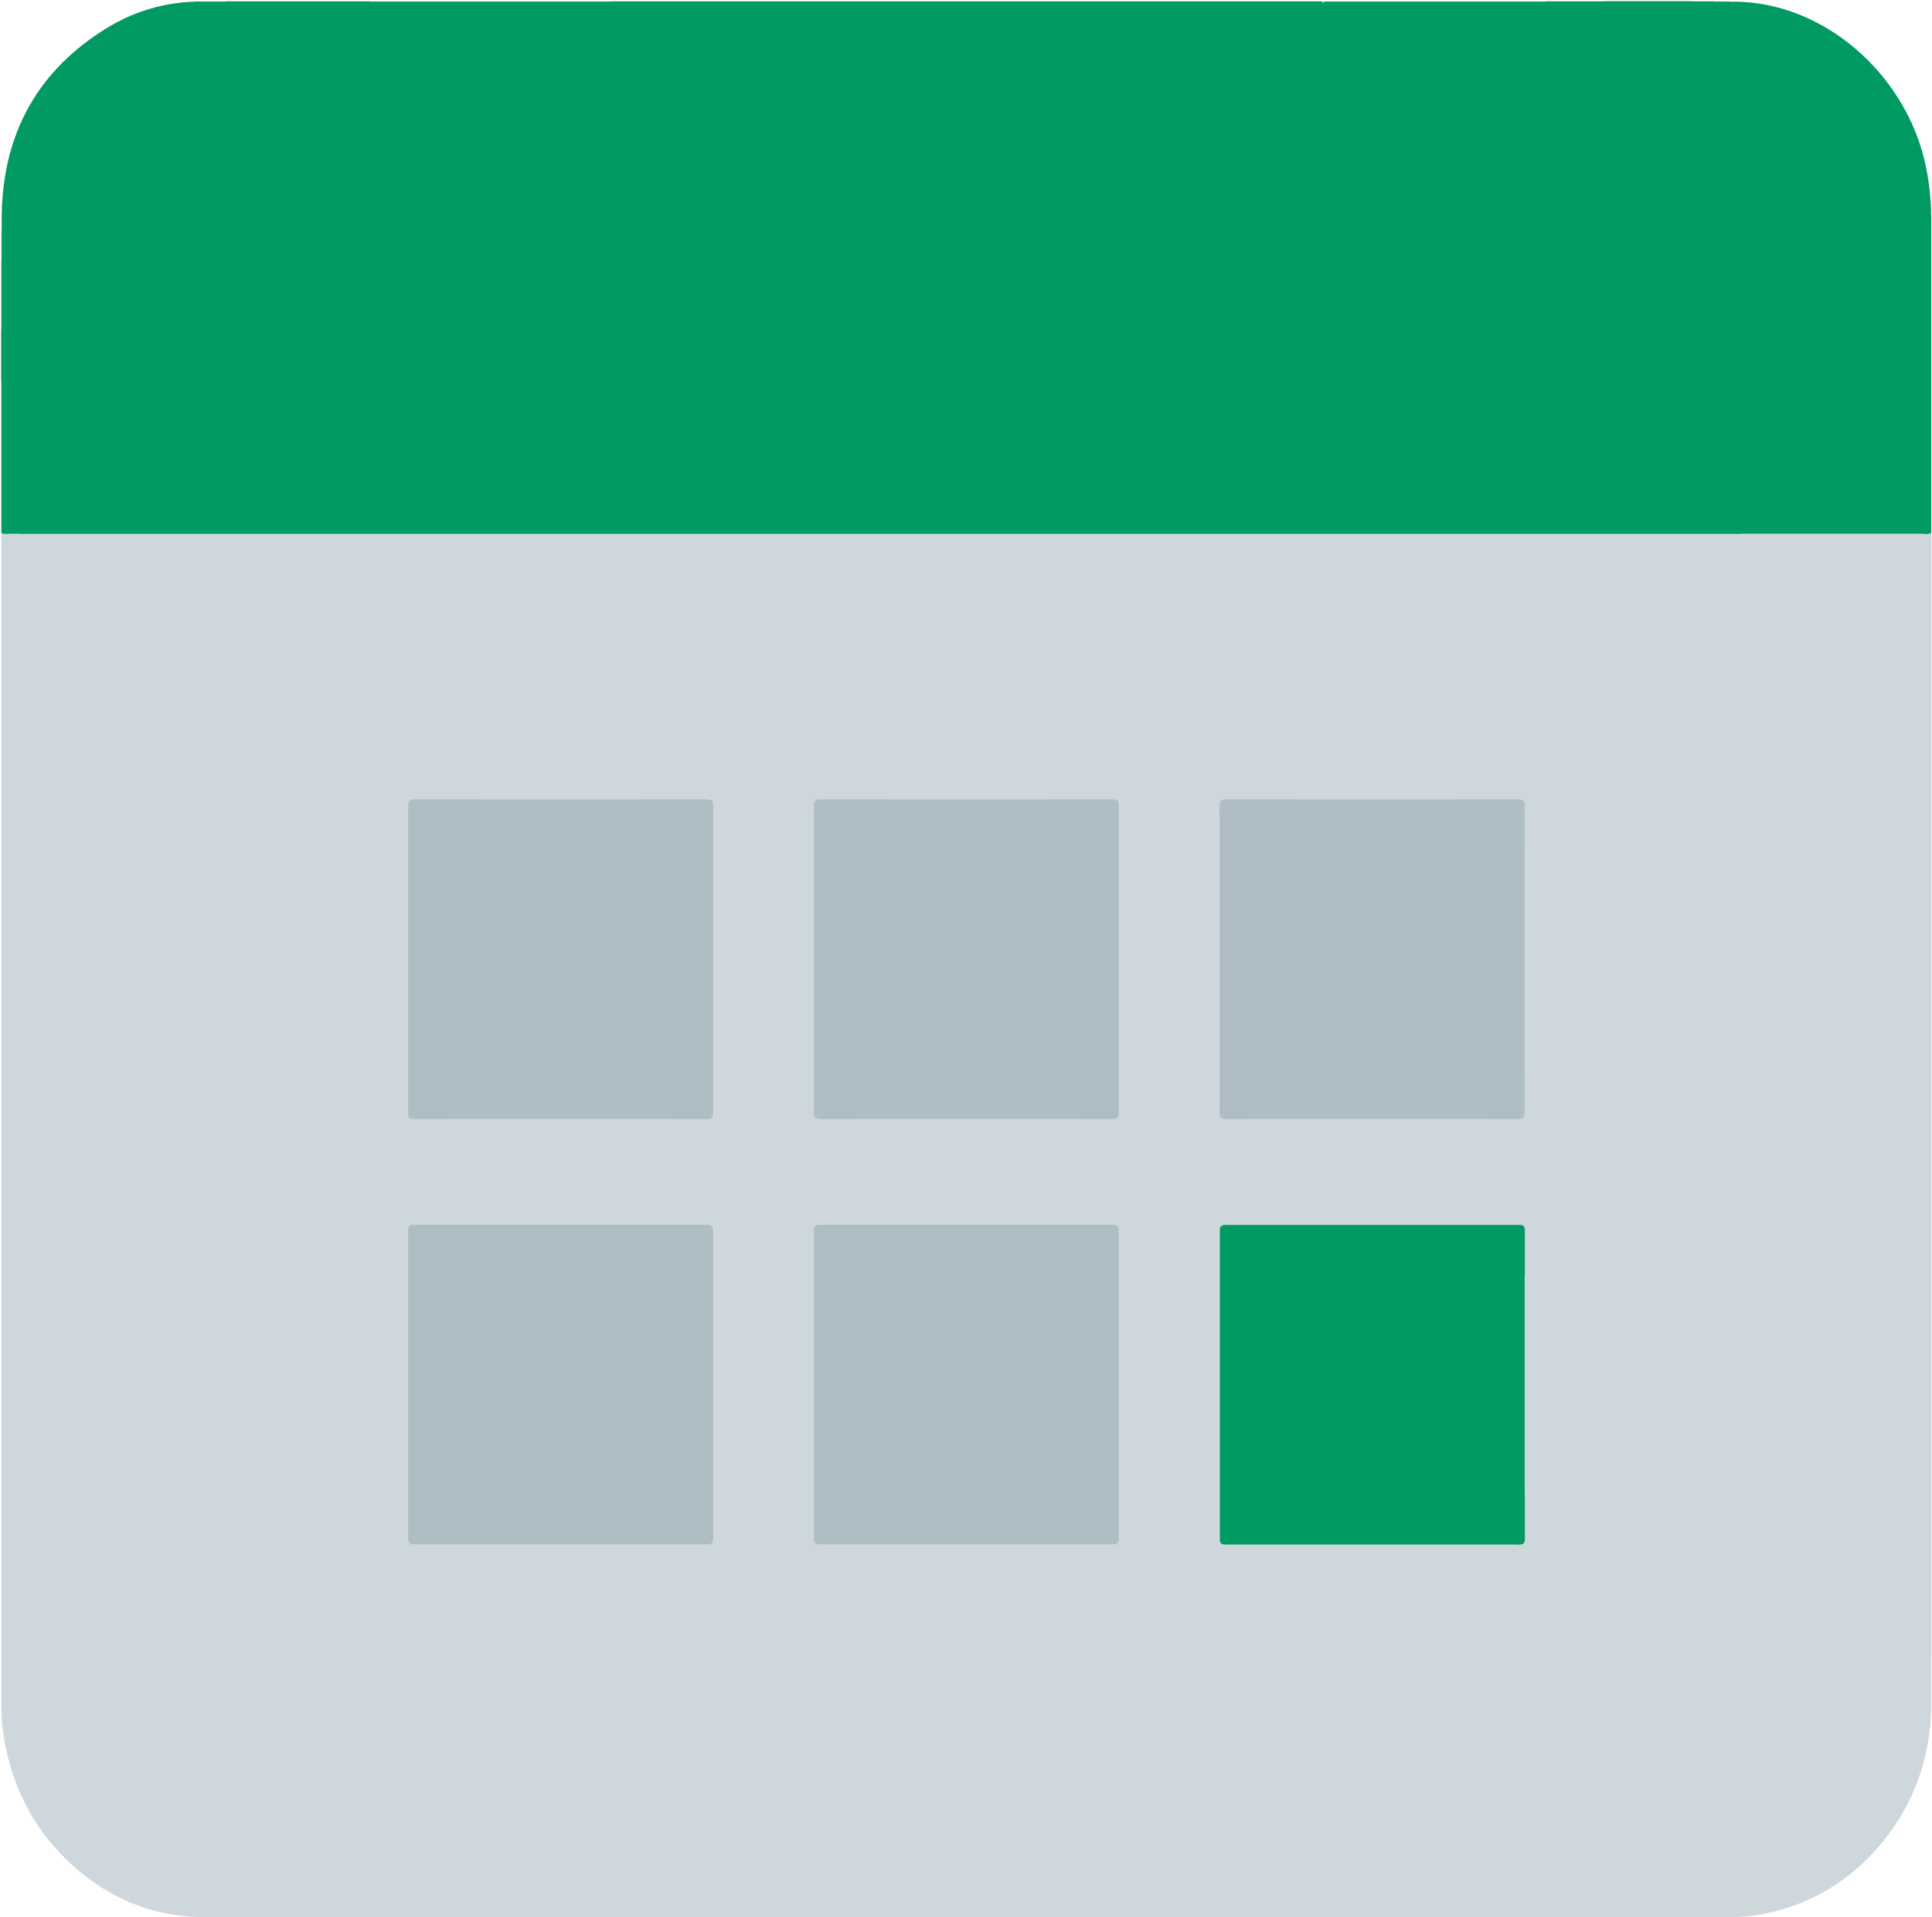 Fileicons8 Flat Planner Green Calendarpng - Calendar Png (3000x3000)